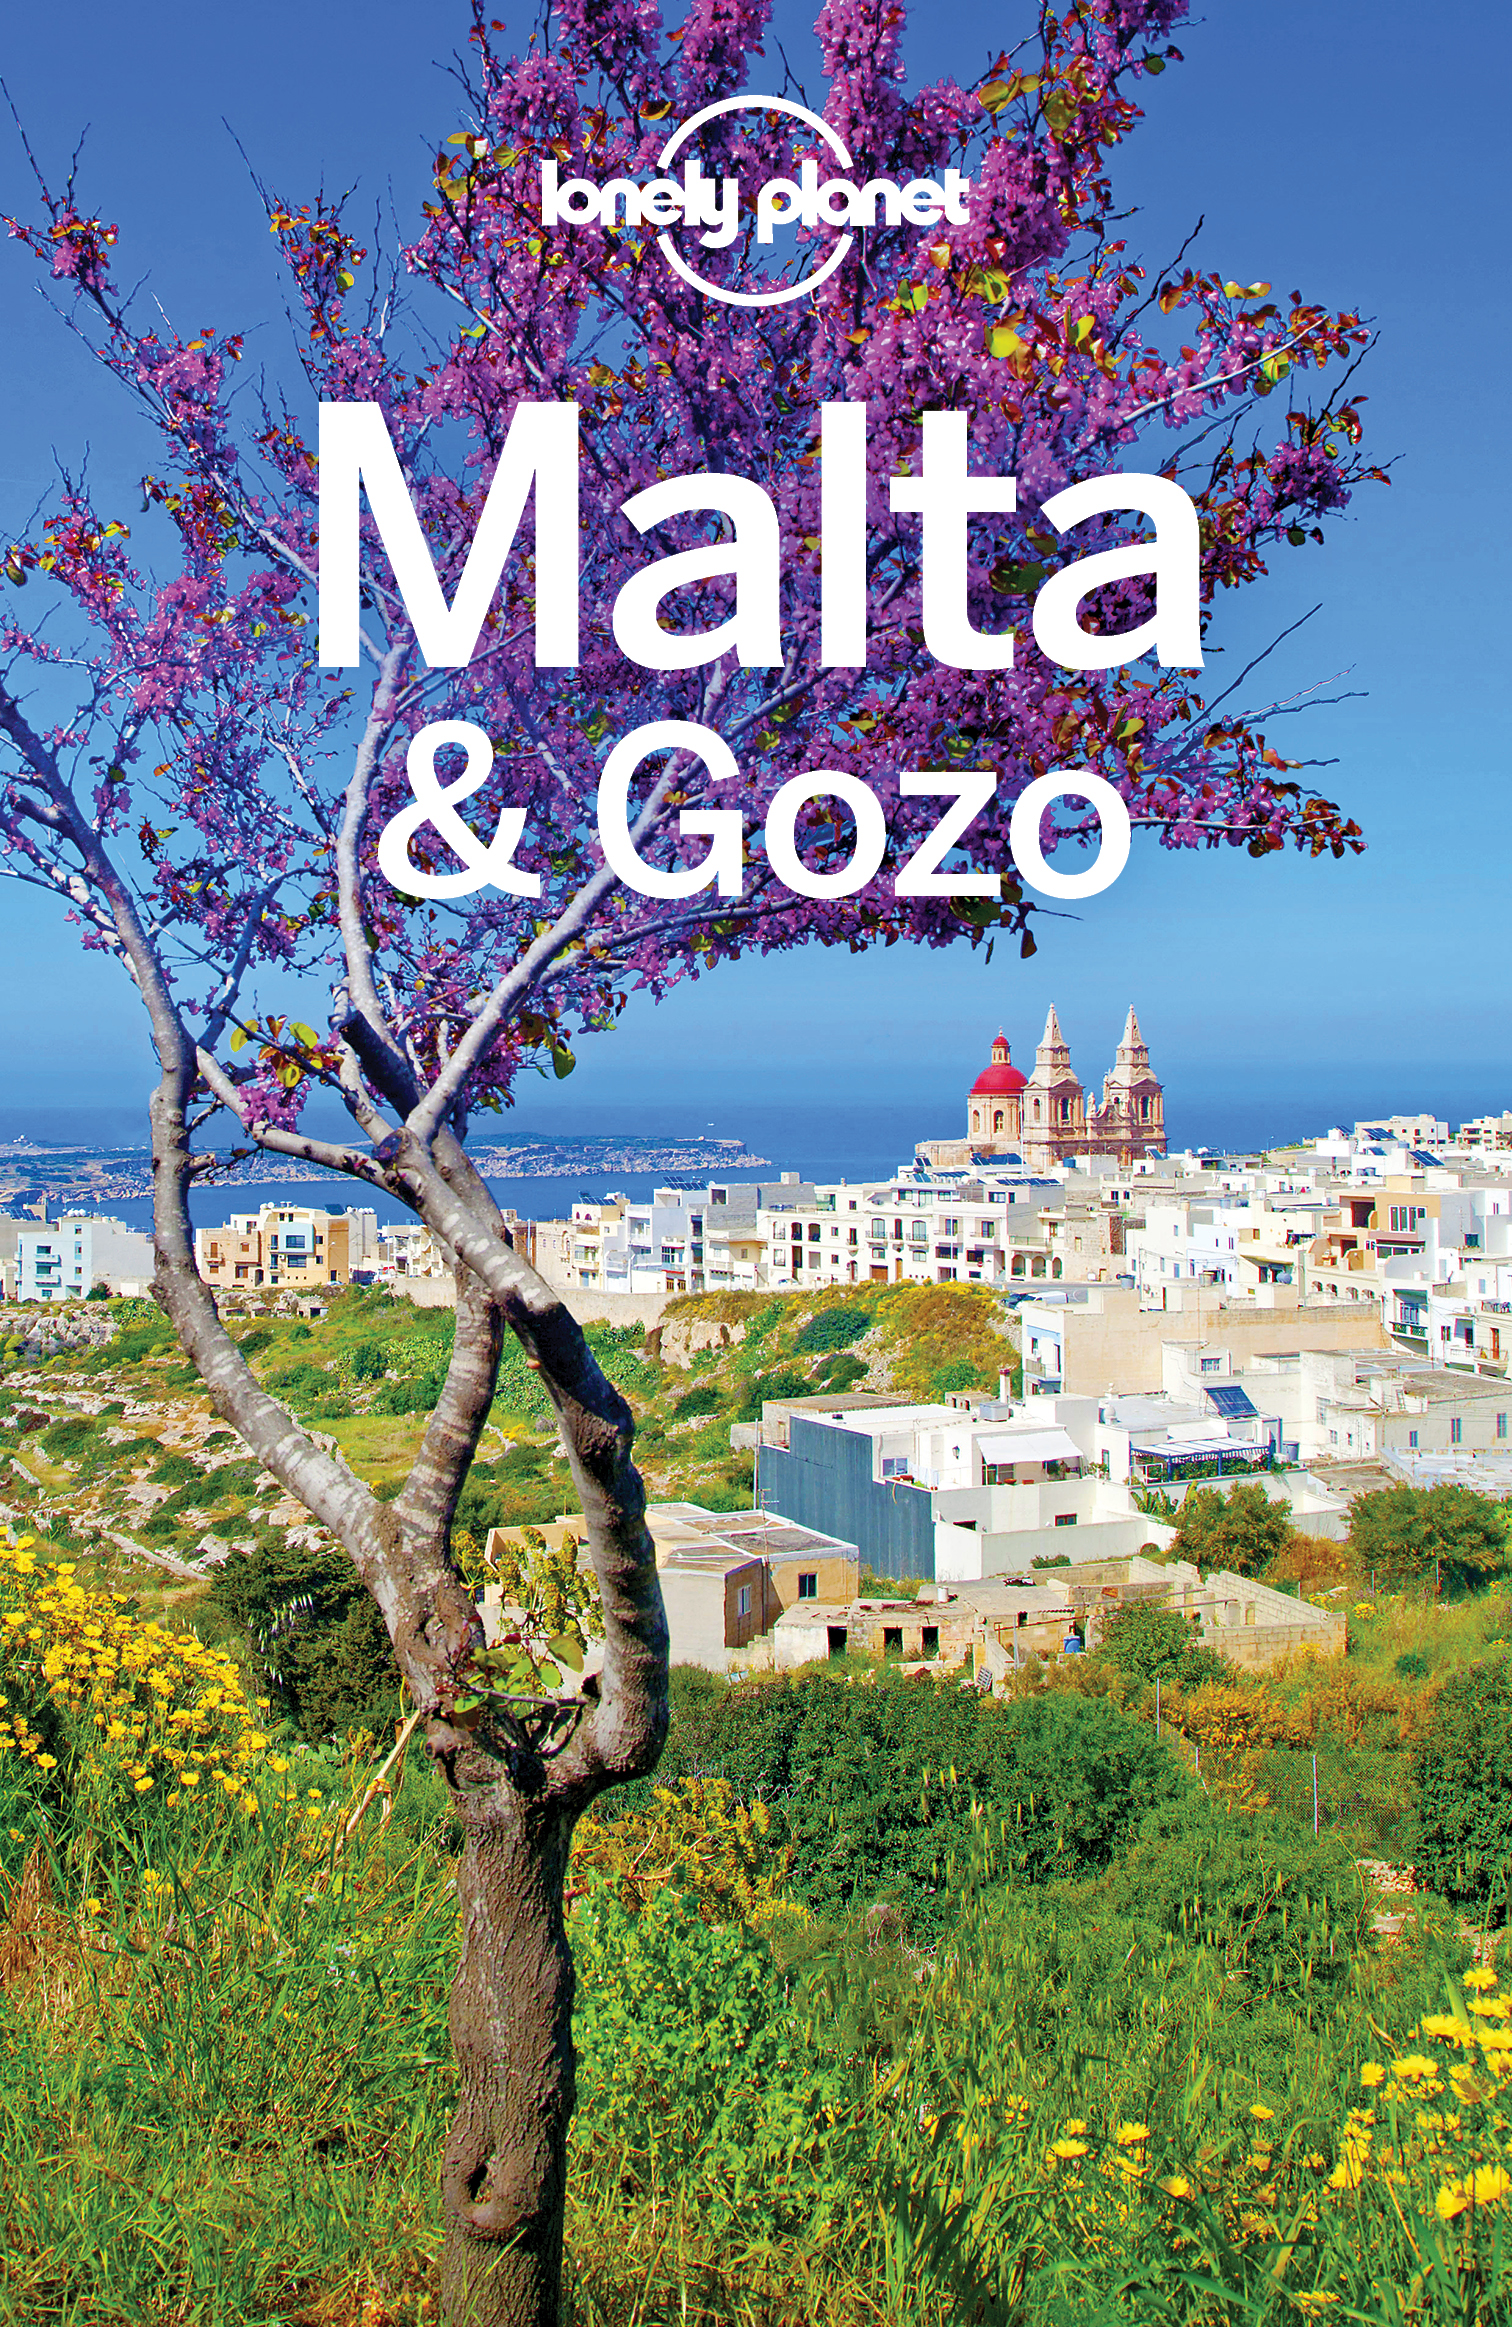 Lonely Planet Malta Gozo - image 1